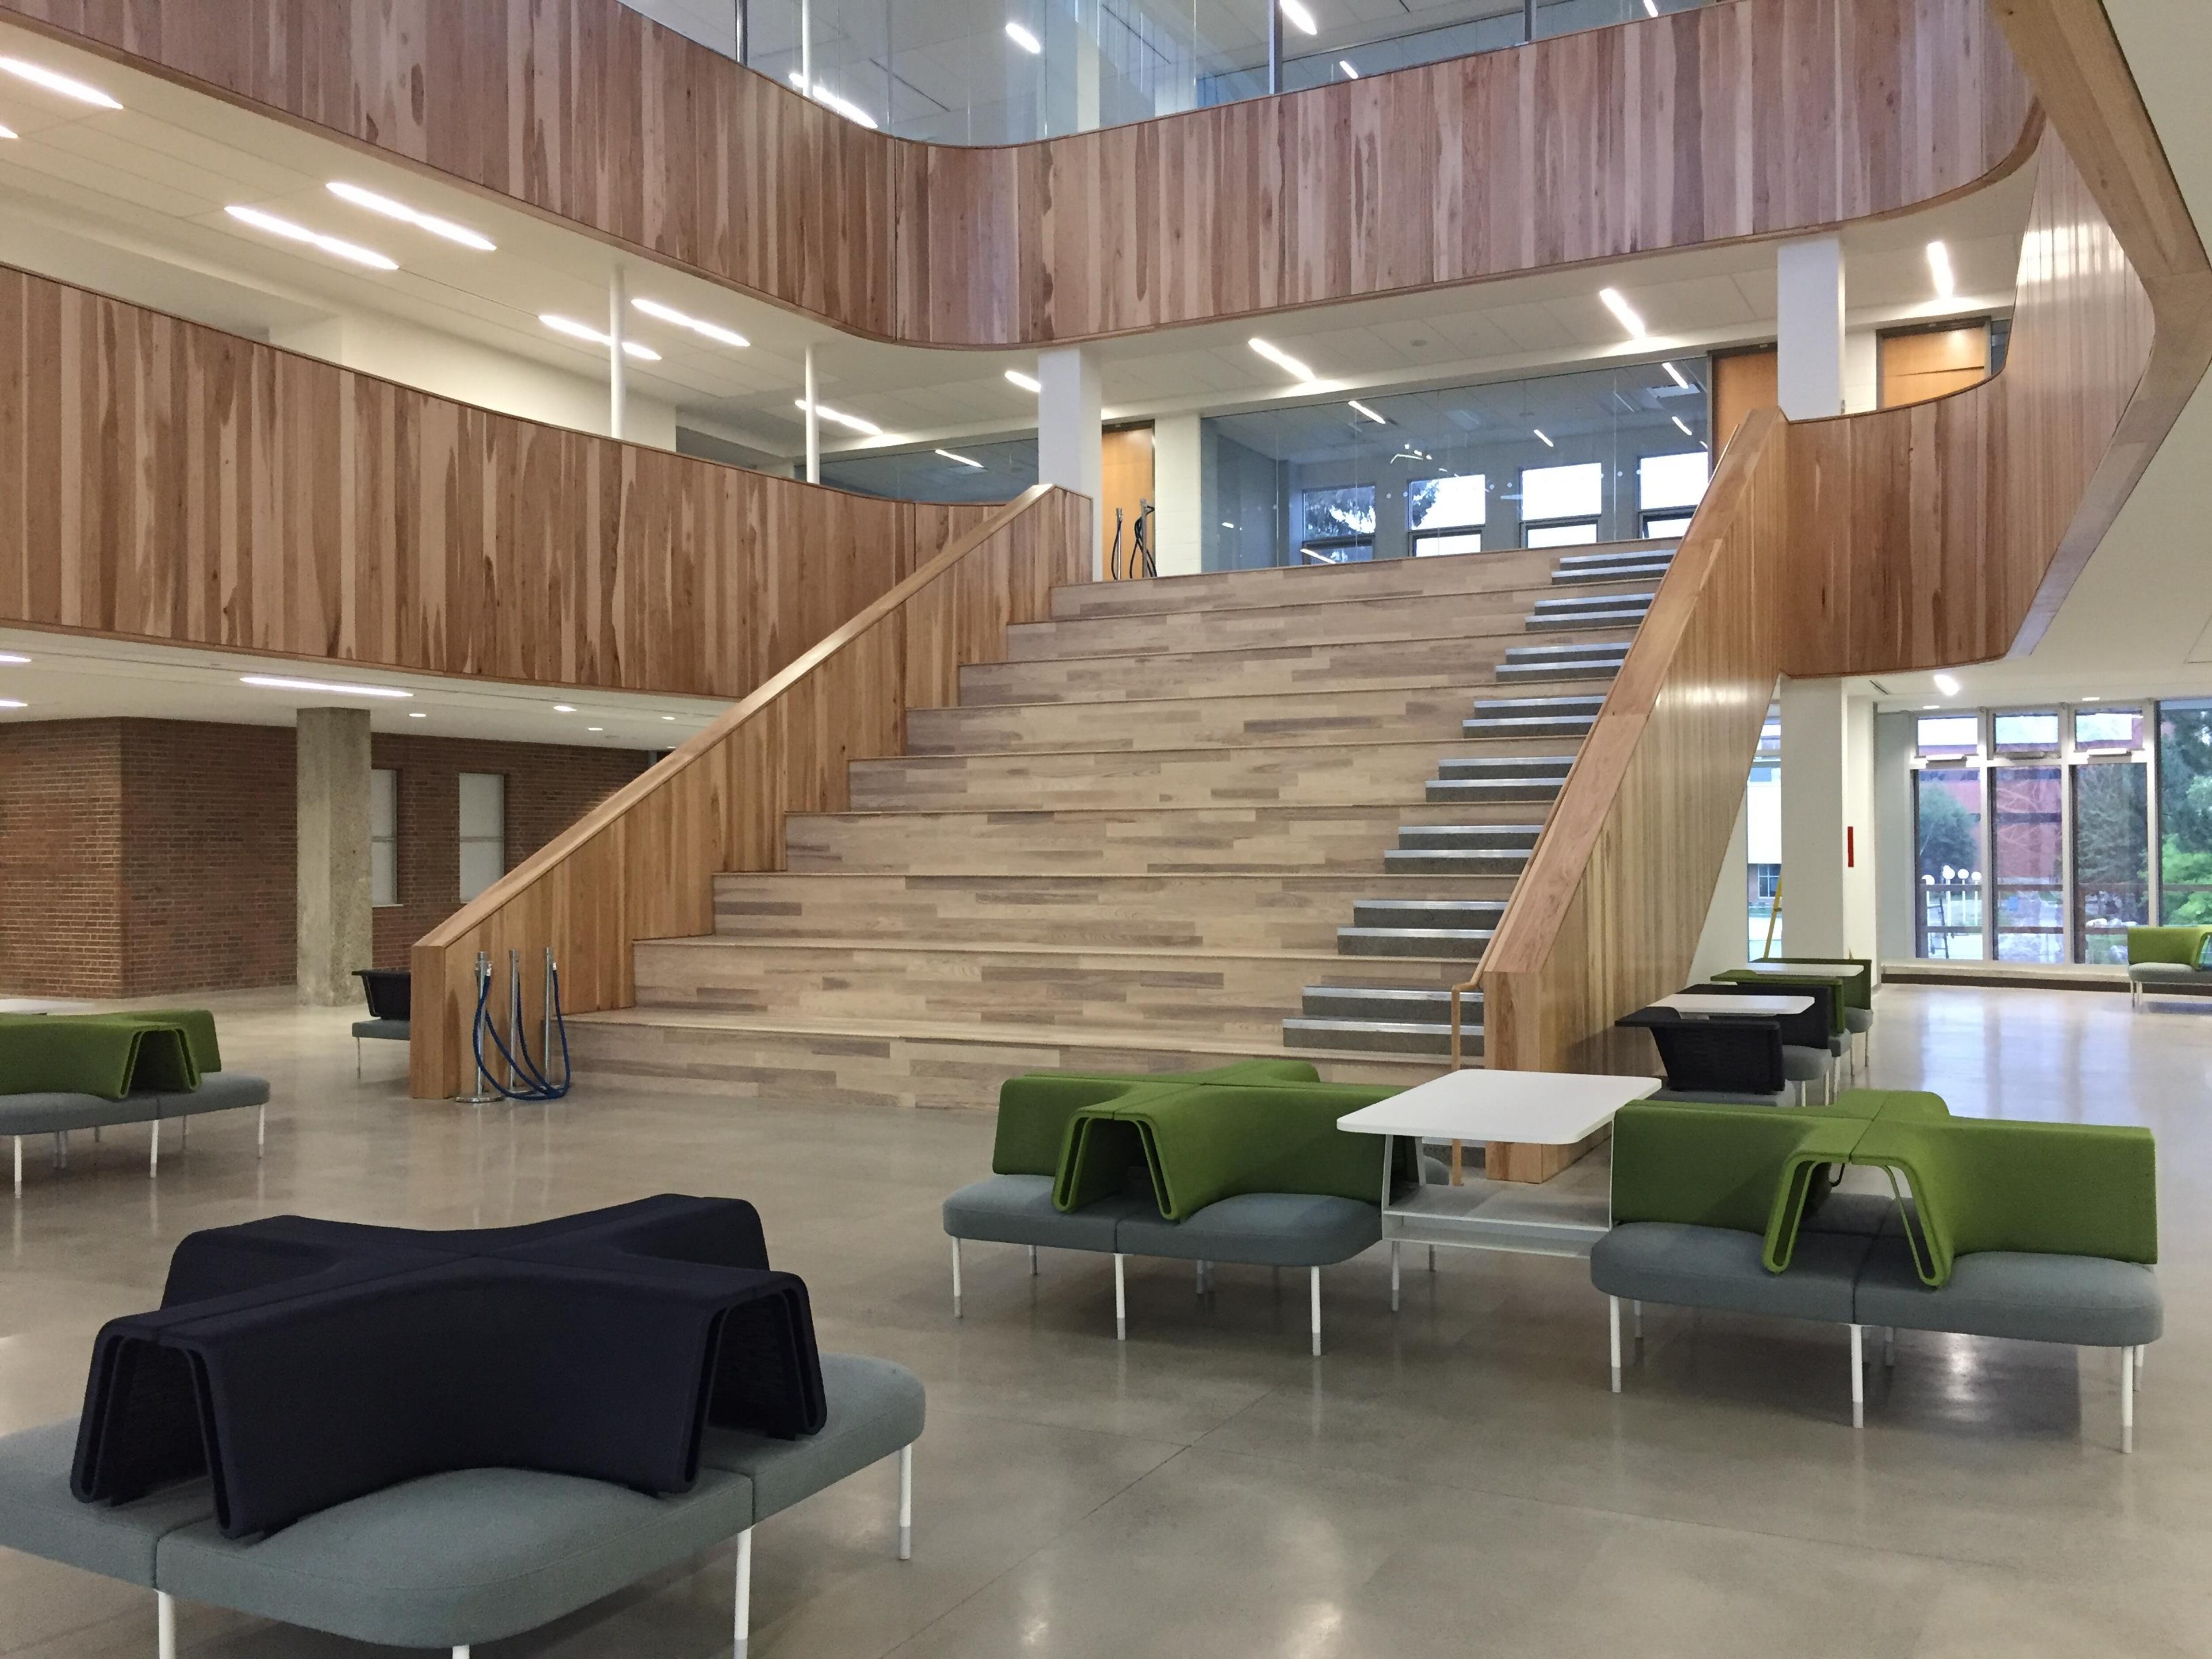 Le nouvel atrium de l'Université Laurentienne est tout en bois, avec quelques fauteuils pour accueillir les élèves. Il compte de grands escaliers.